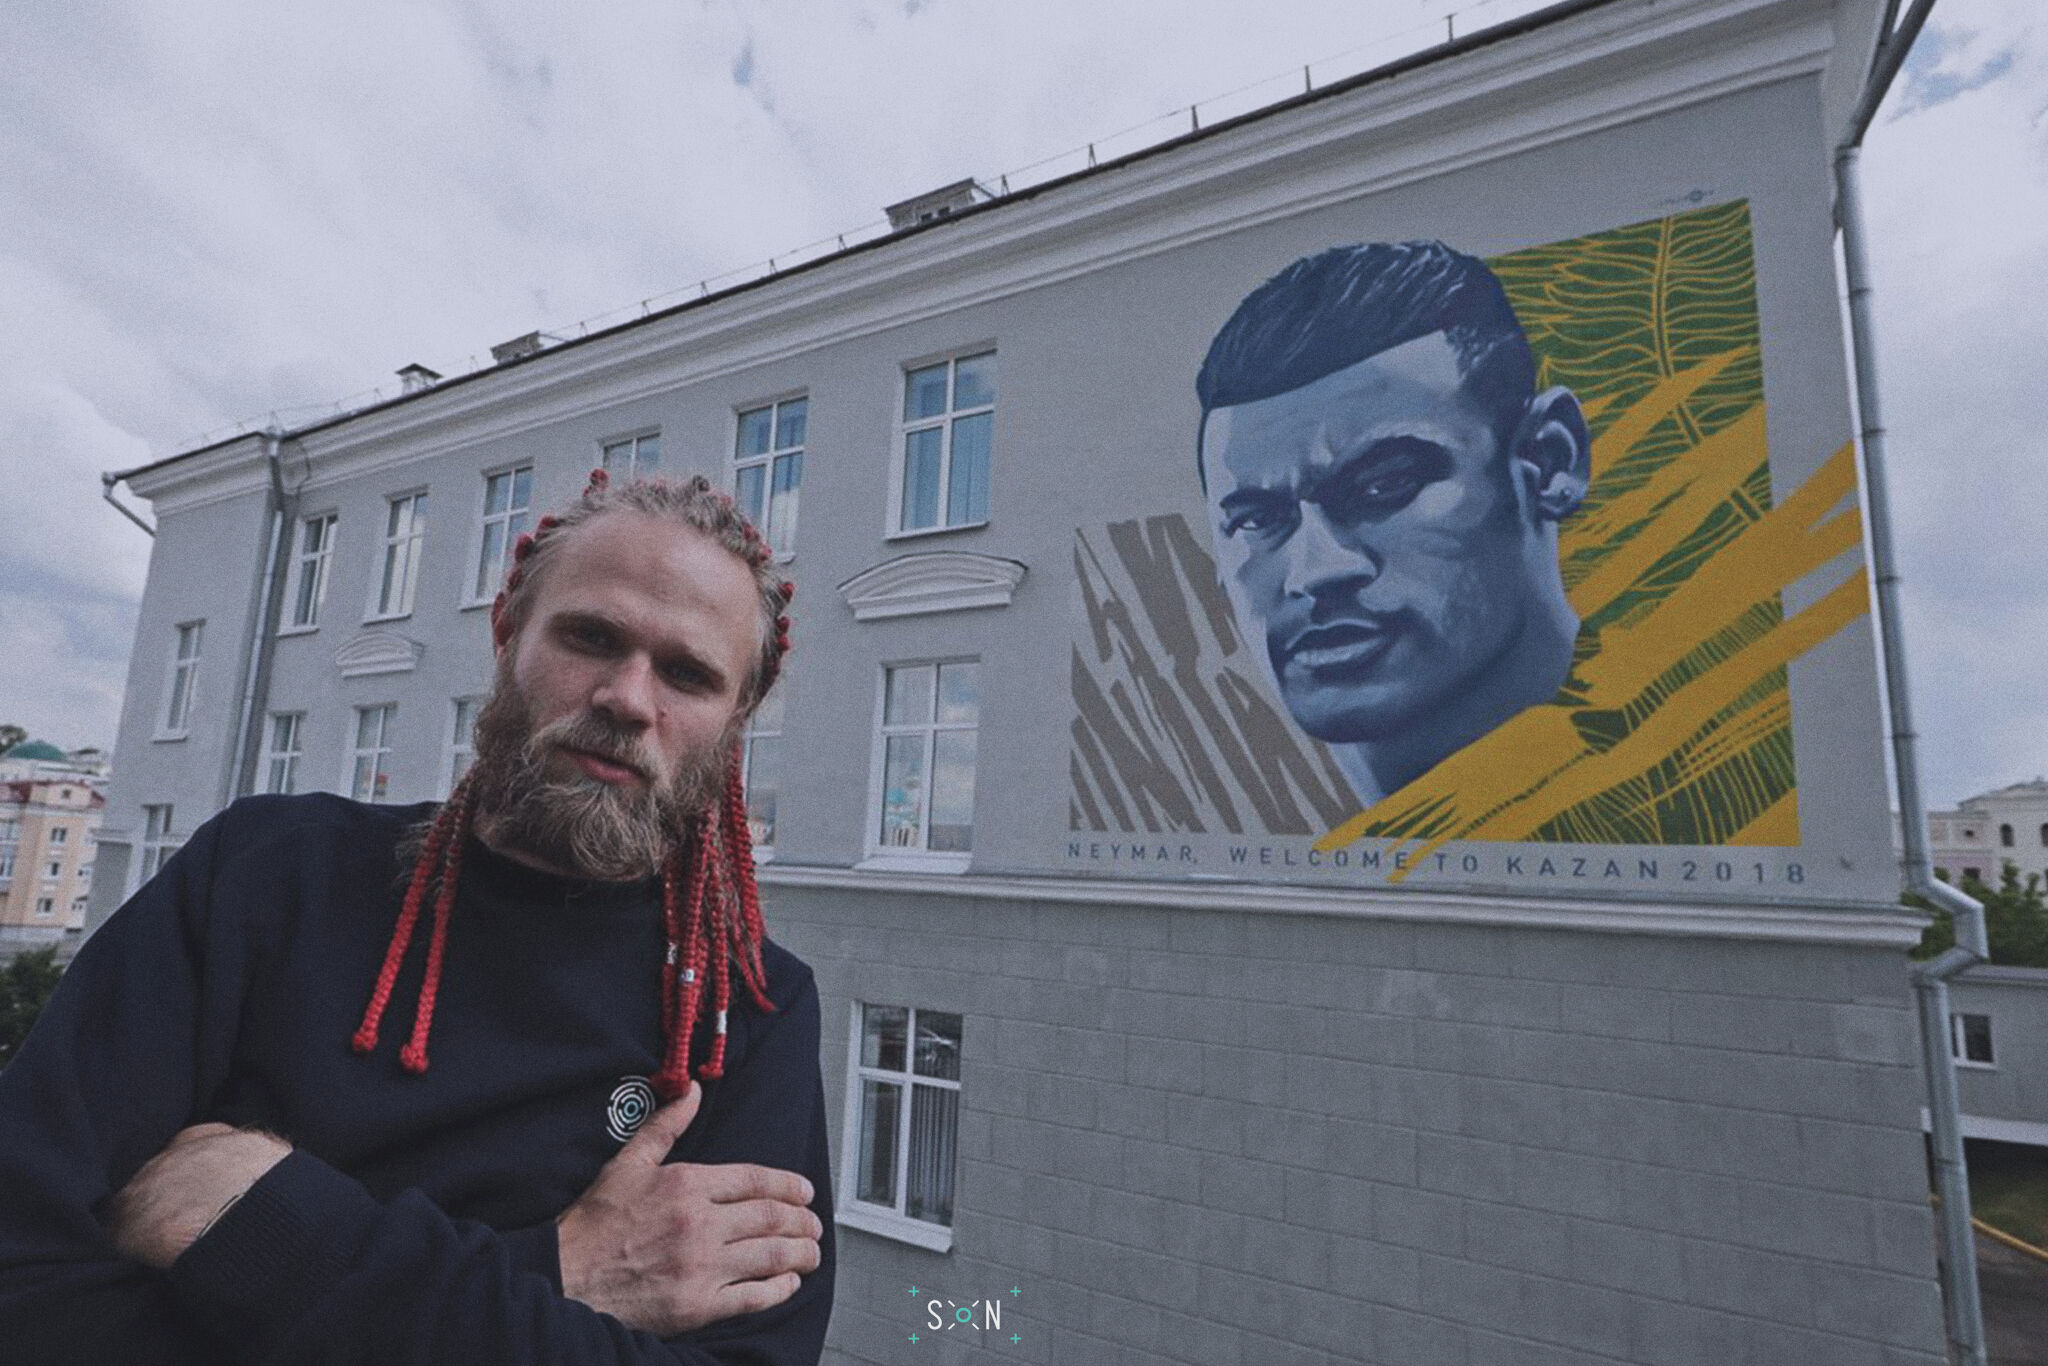 LIL-DEE, Sergey Akramov&mdash;Neymar Mural